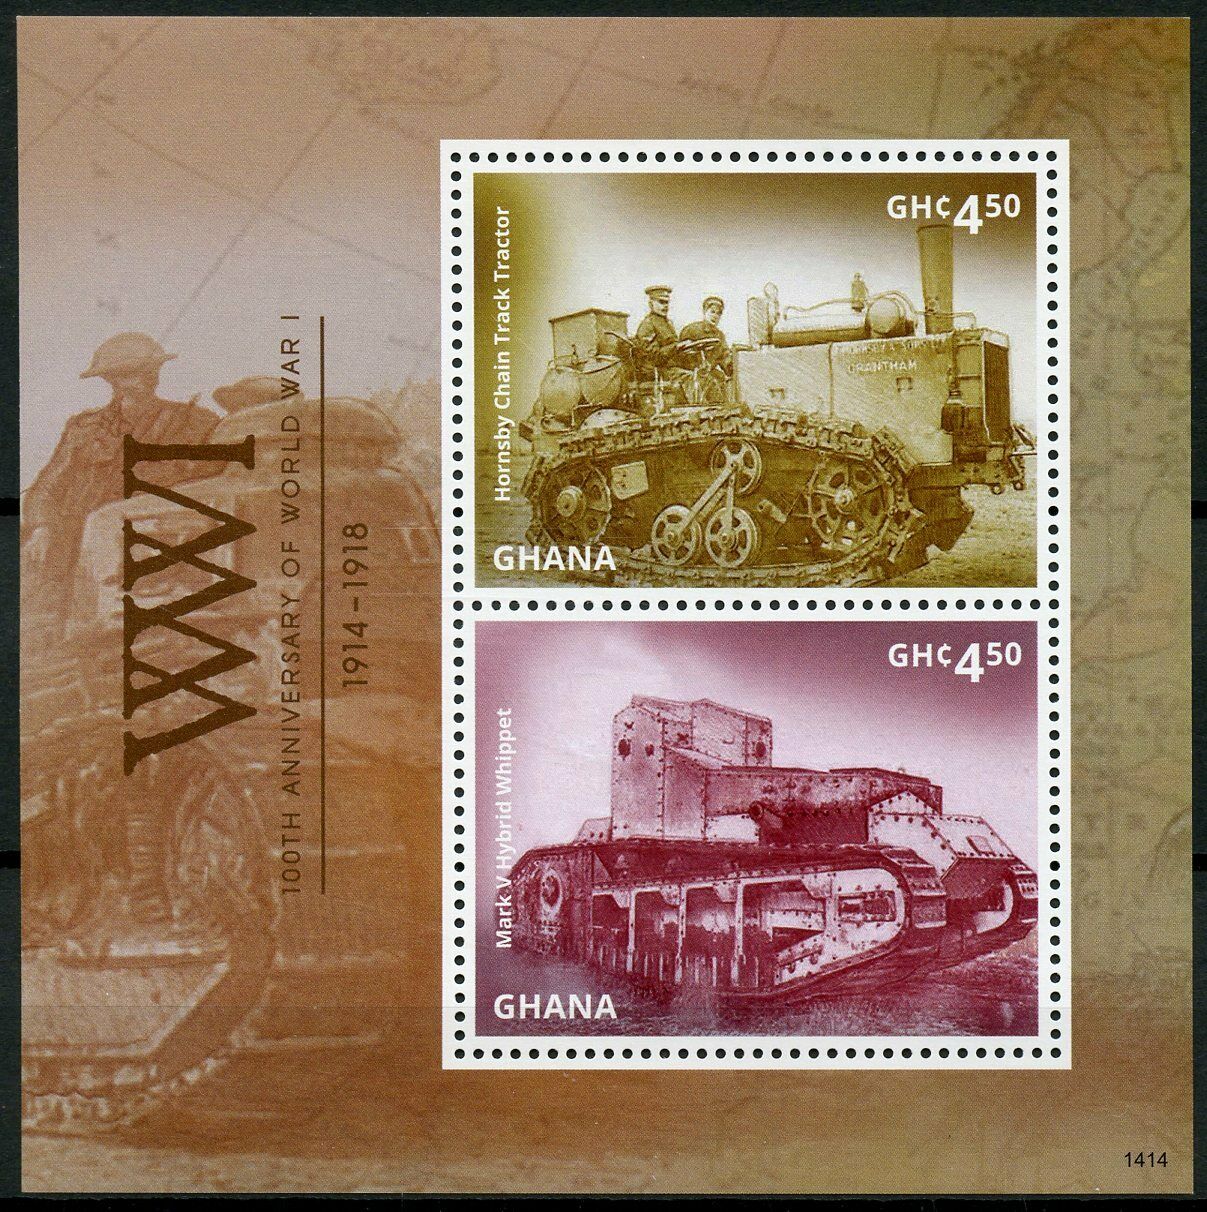 Ghana Military Stamps 2014 MNH WWI WW1 World War I Whippet Tanks 2v S/S I